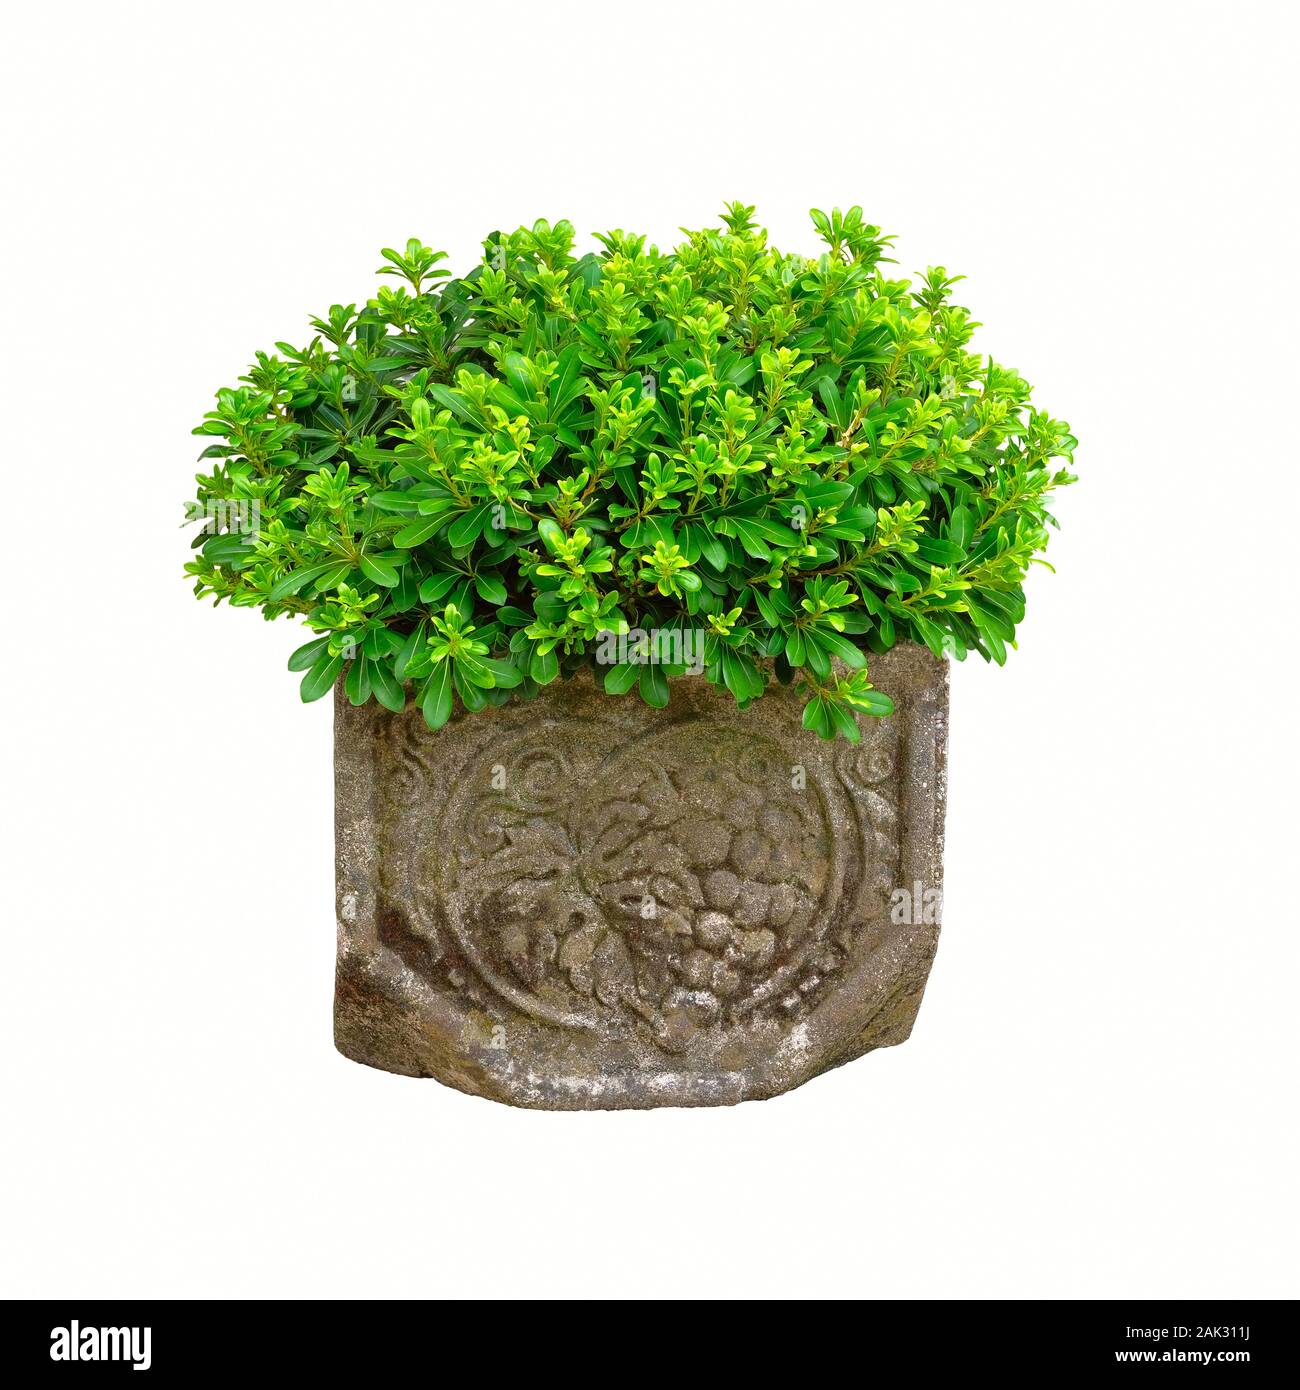 Pentola con bussola della pianta verde per la progettazione paesaggistica, isolato su sfondo bianco. Pianta in vaso con fresche foglie succosa. Contenitore facendo del giardinaggio. Foto Stock